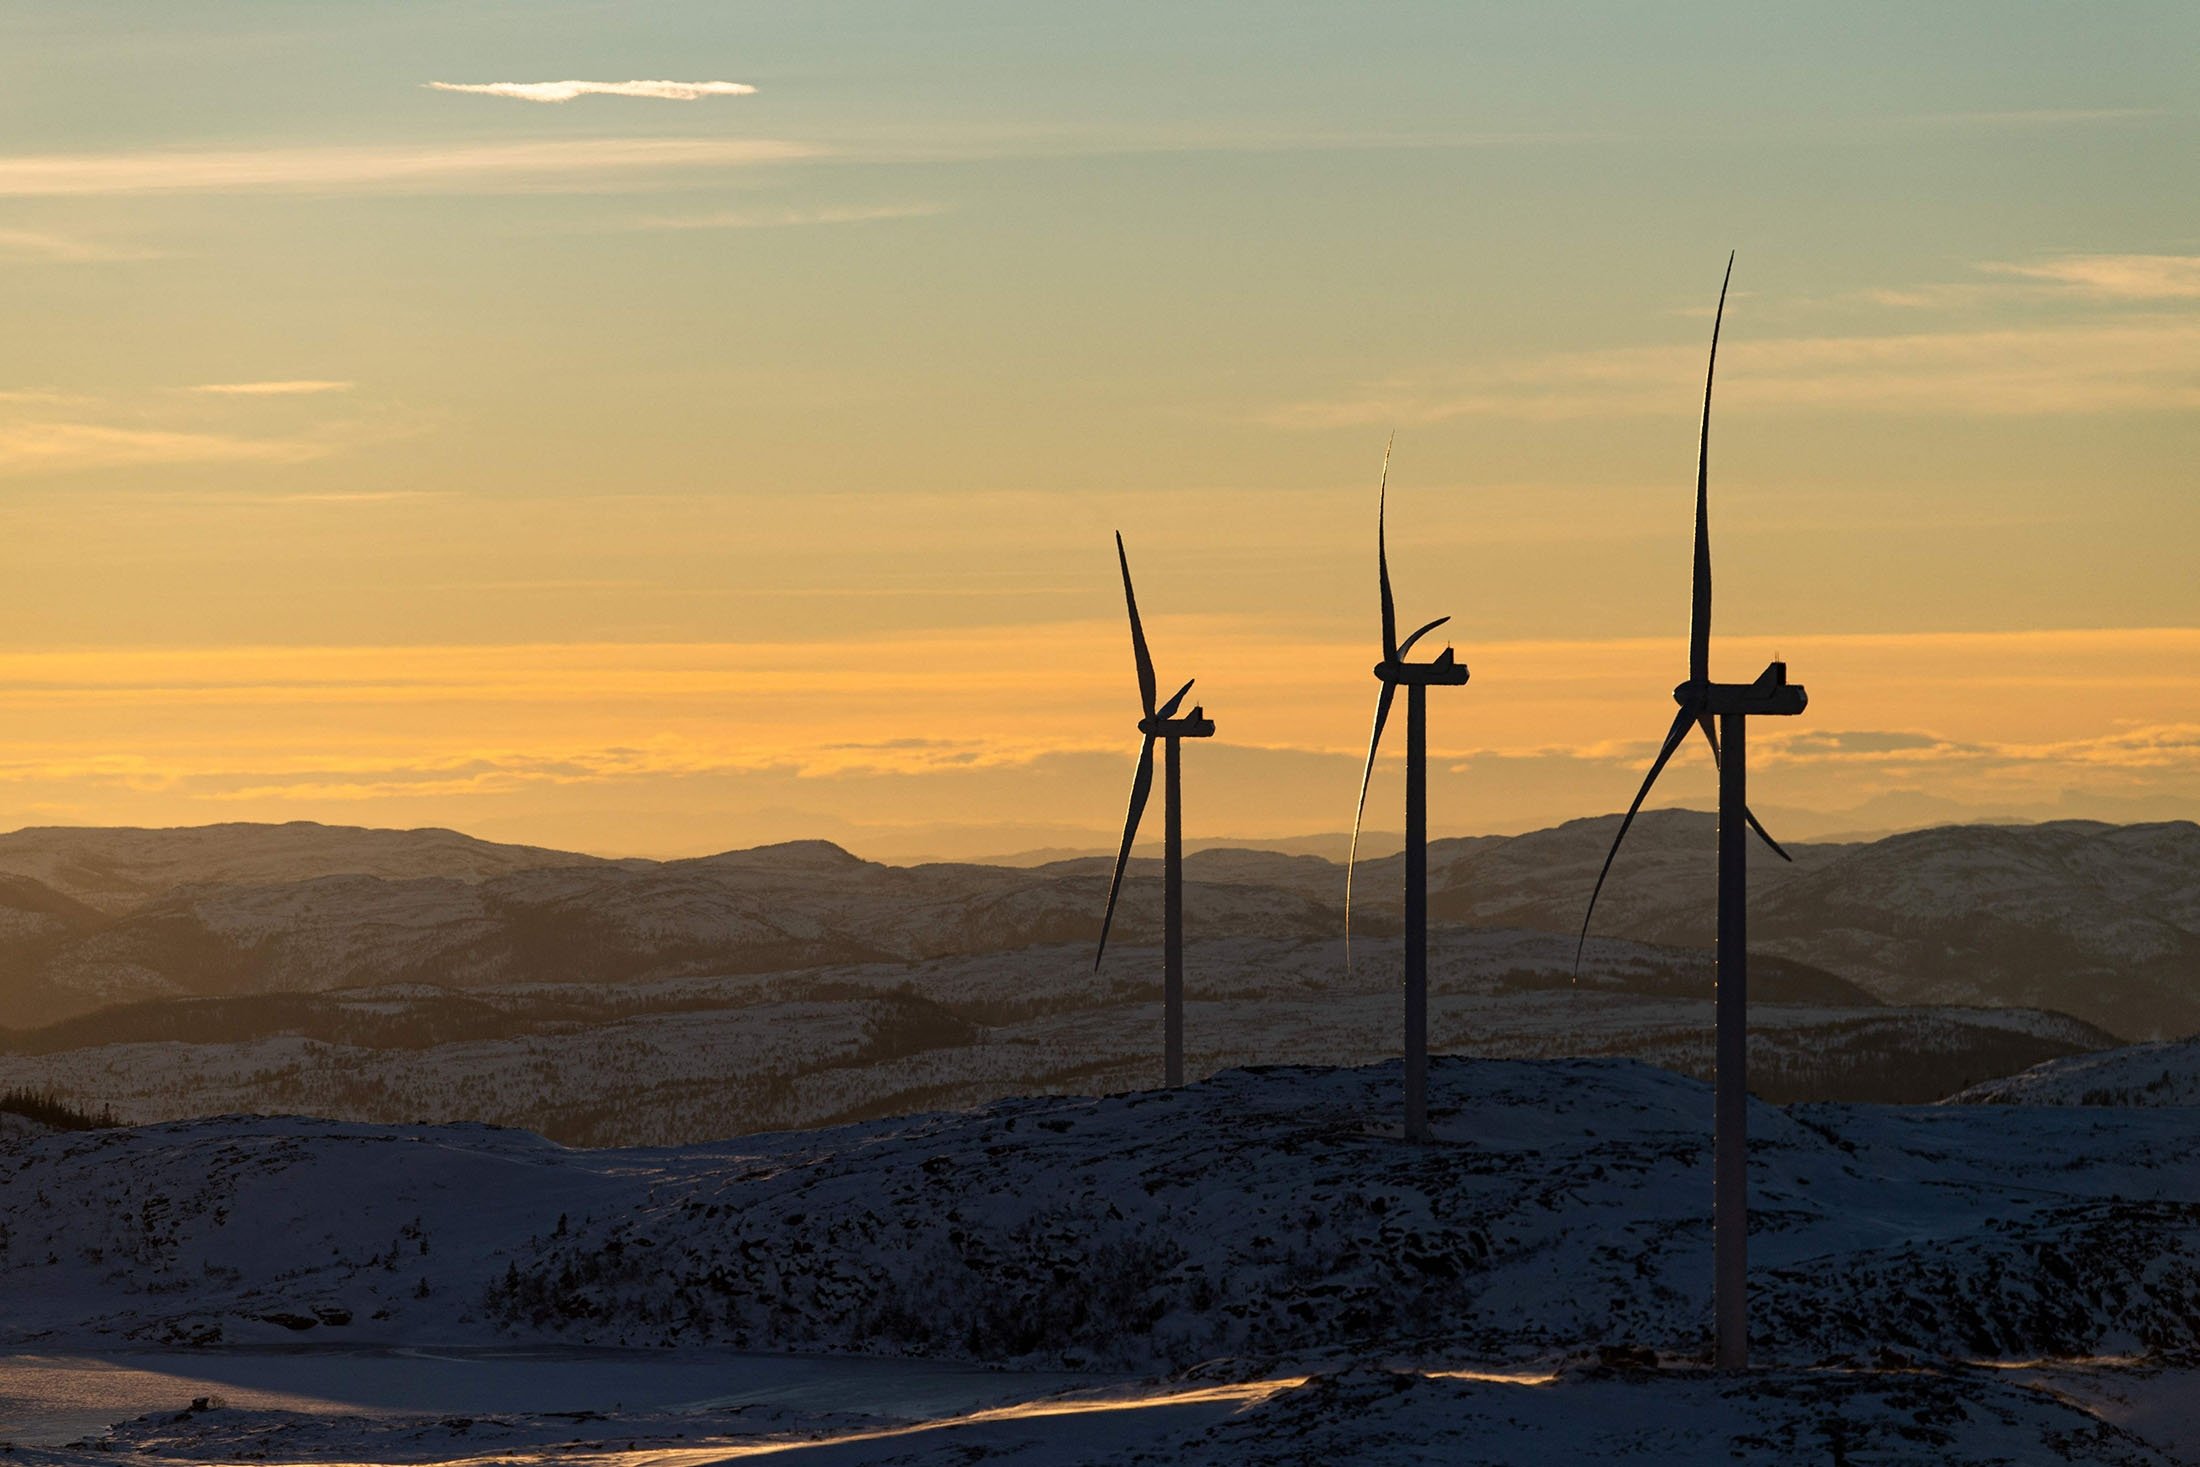 Turbin angin dari ladang angin Storheia, salah satu taman angin darat terbesar di Eropa, di kotamadya Afjord, Norwegia, 7 Desember 2021. (AFP Photo)